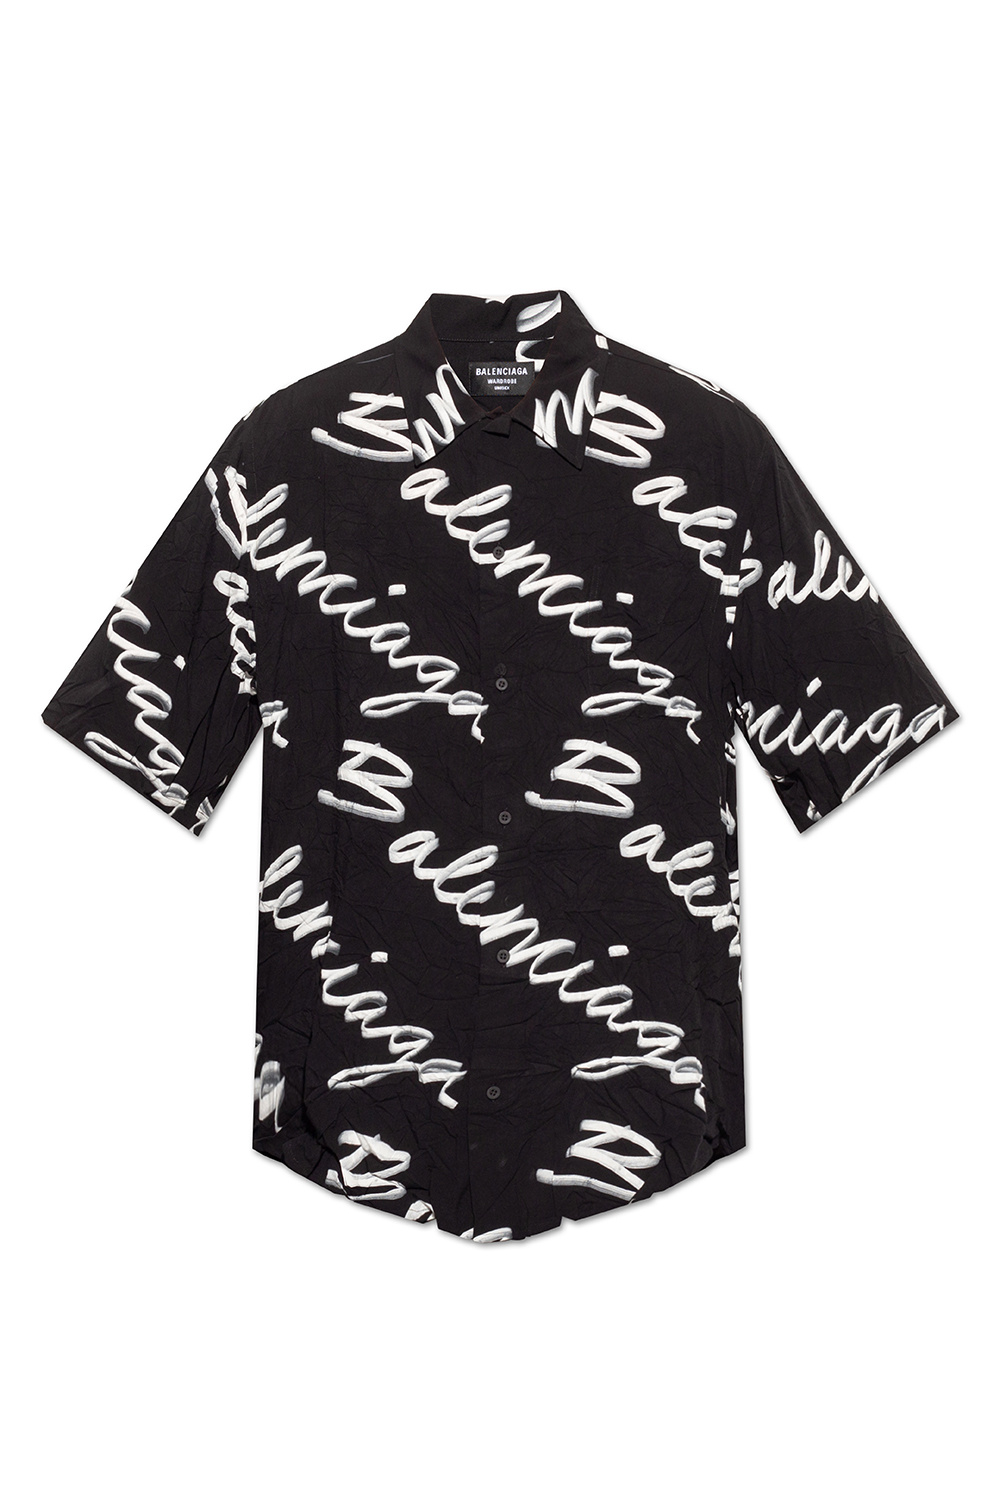 Balenciaga Short-sleeved med shirt